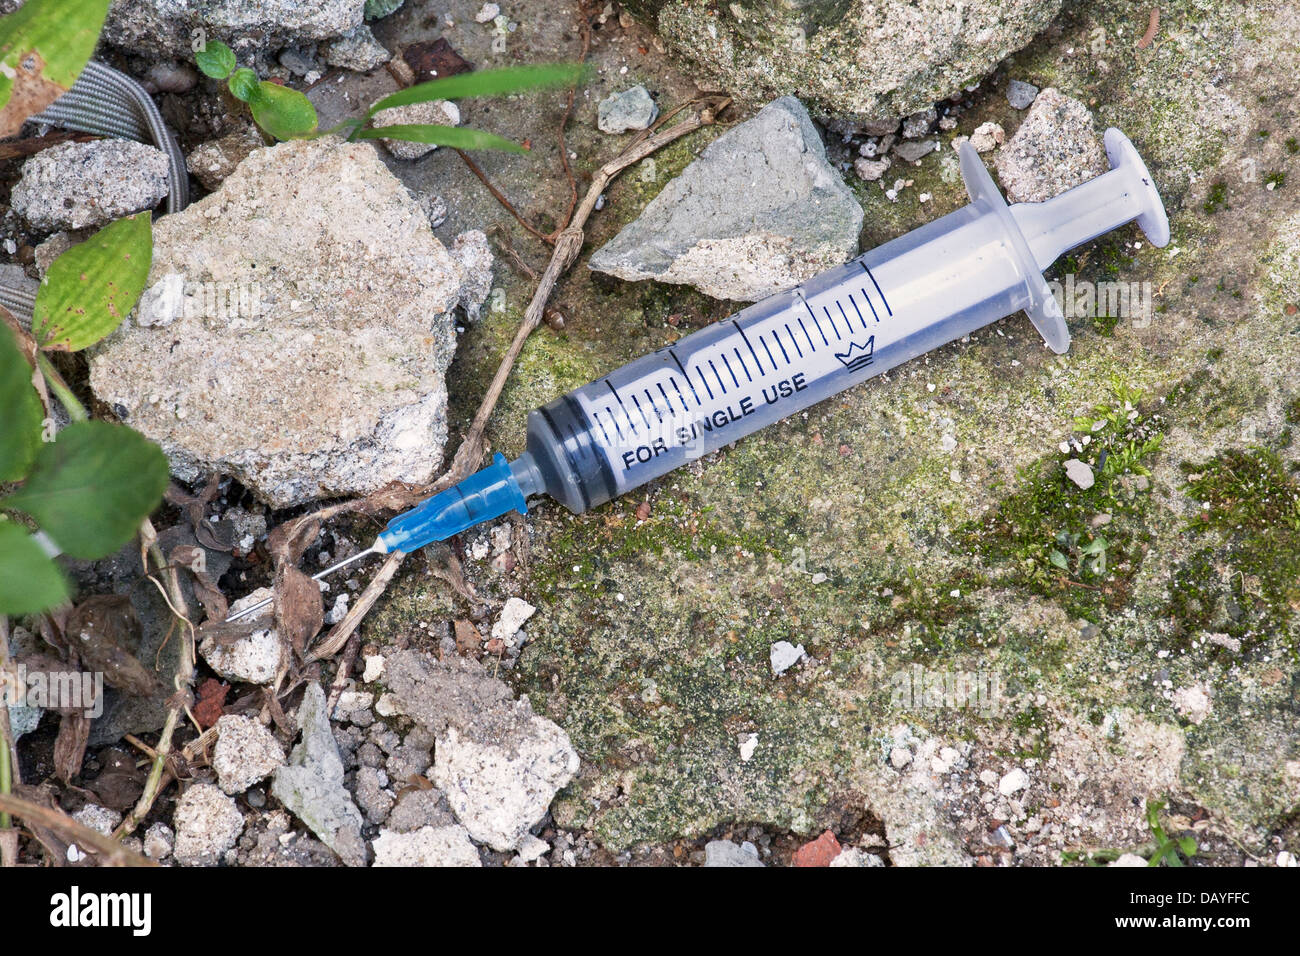 Les seringues hypodermiques trouvés sur le terrain de l'usage de drogues illicites Banque D'Images